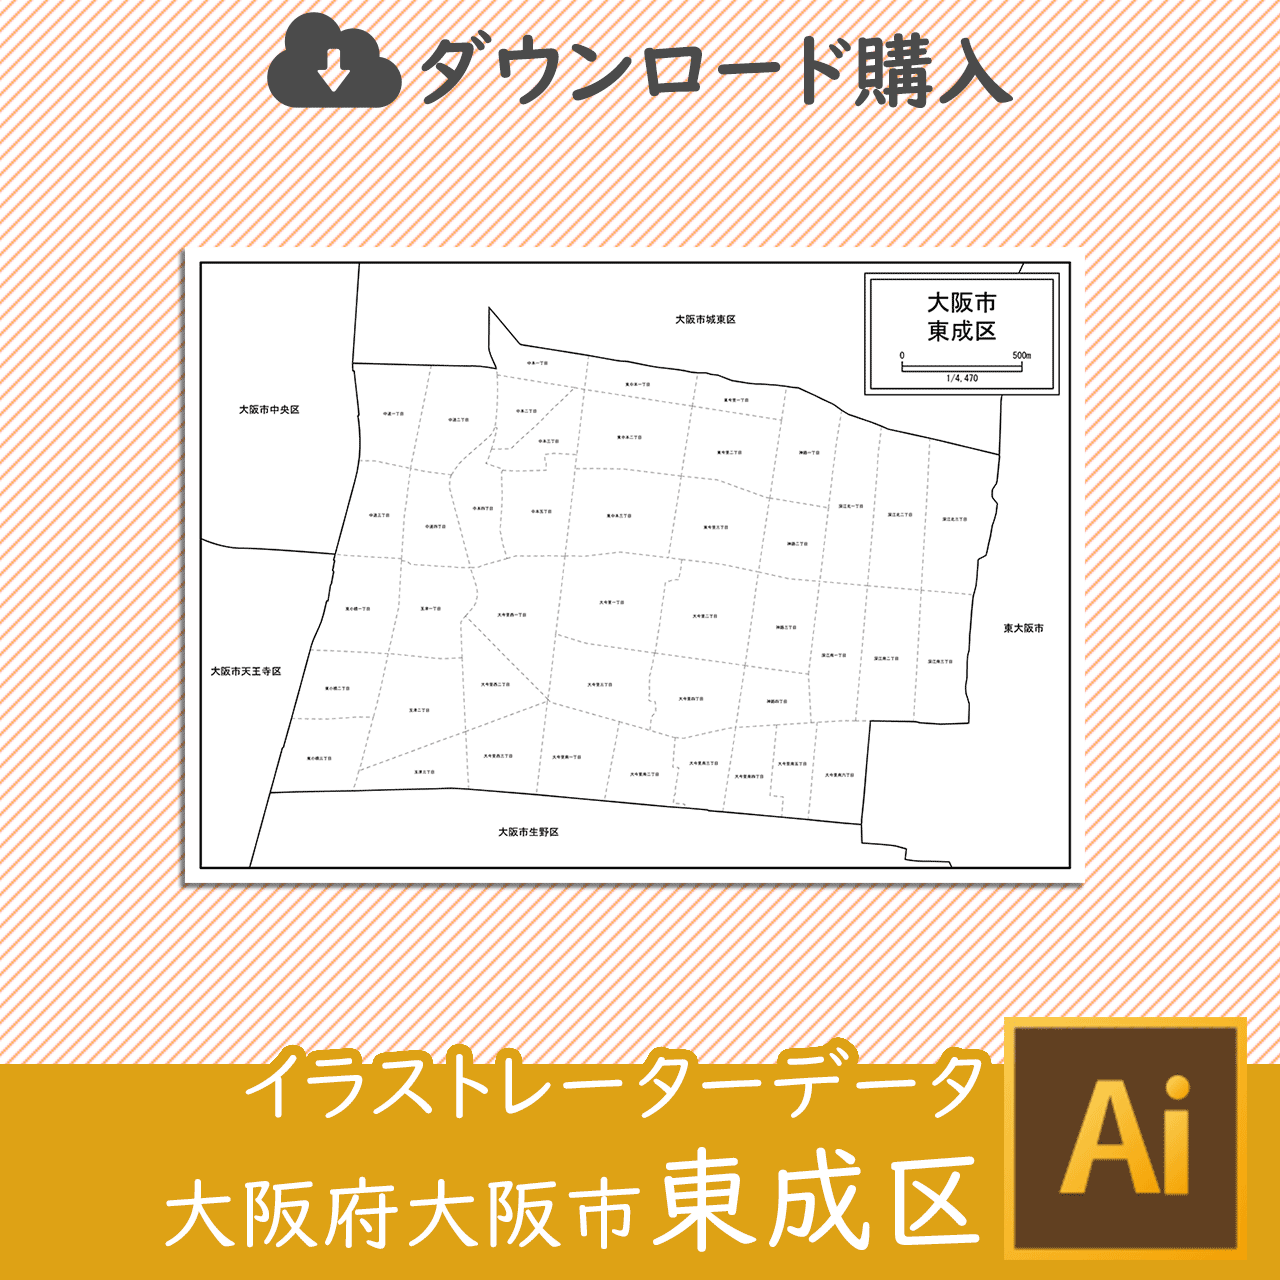 大阪市東成区の白地図のサムネイル画像